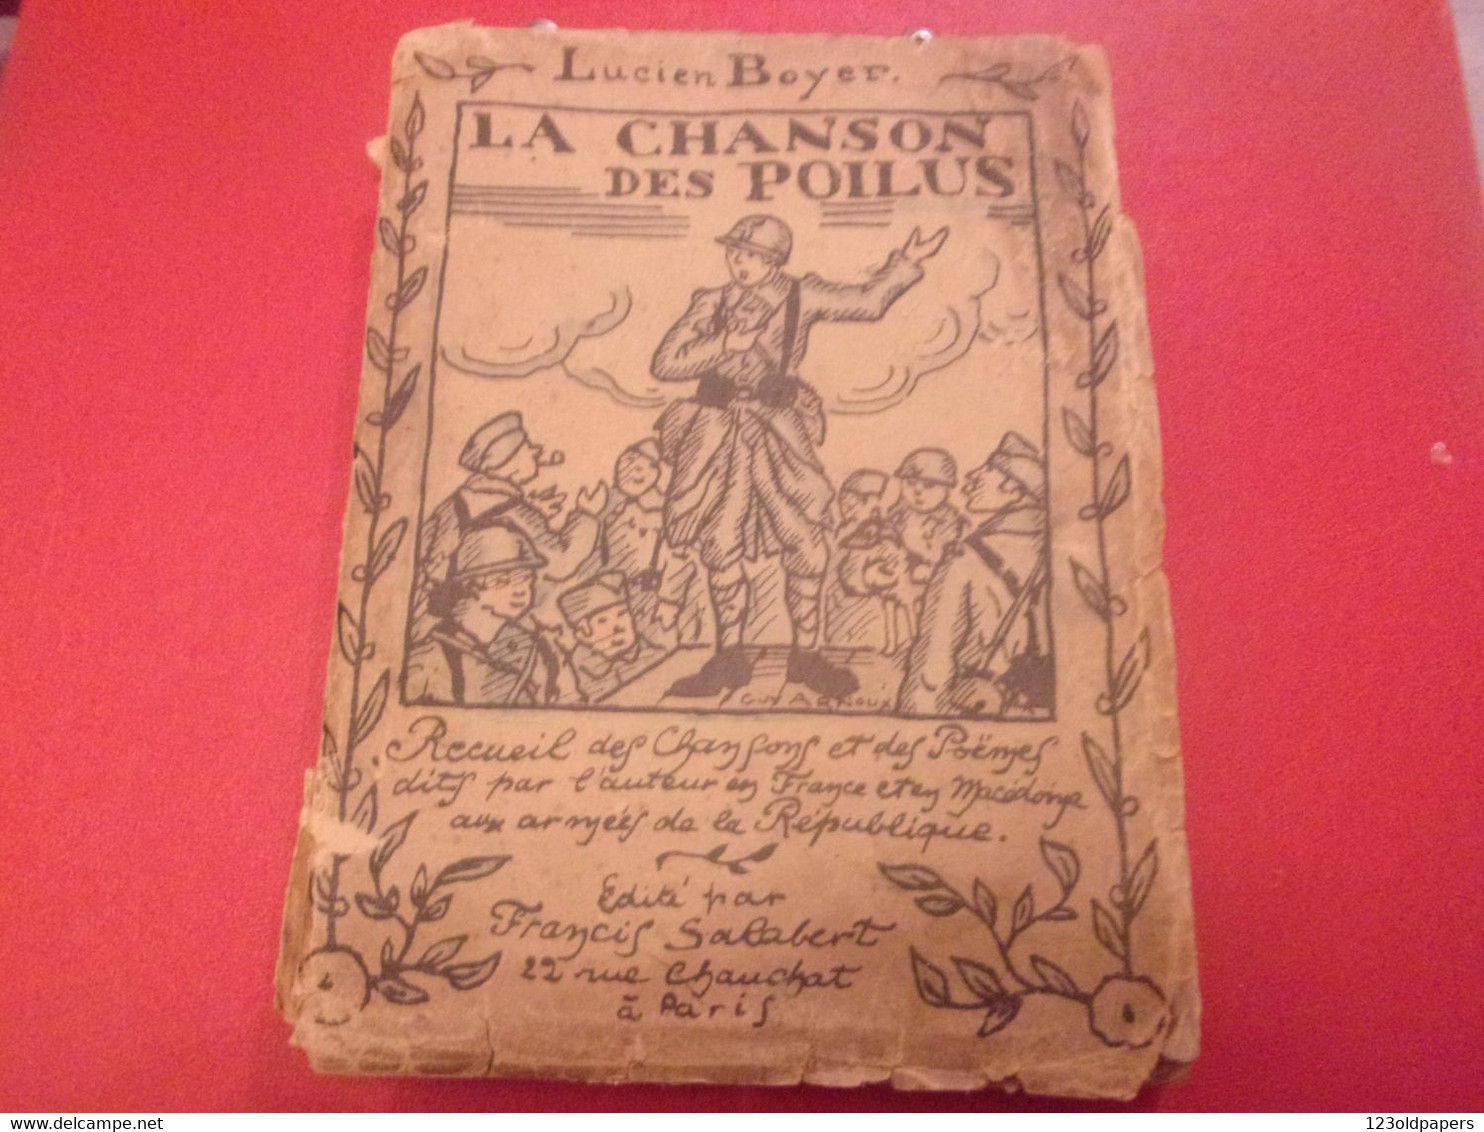 ️ La Chanson Des Poilus Lucien Boyer ENVOI DE L AUTEUR  SALABERT 1918 ILLUSTRE ARNOUX  / DE VALERIO WWI - Oorlog 1914-18